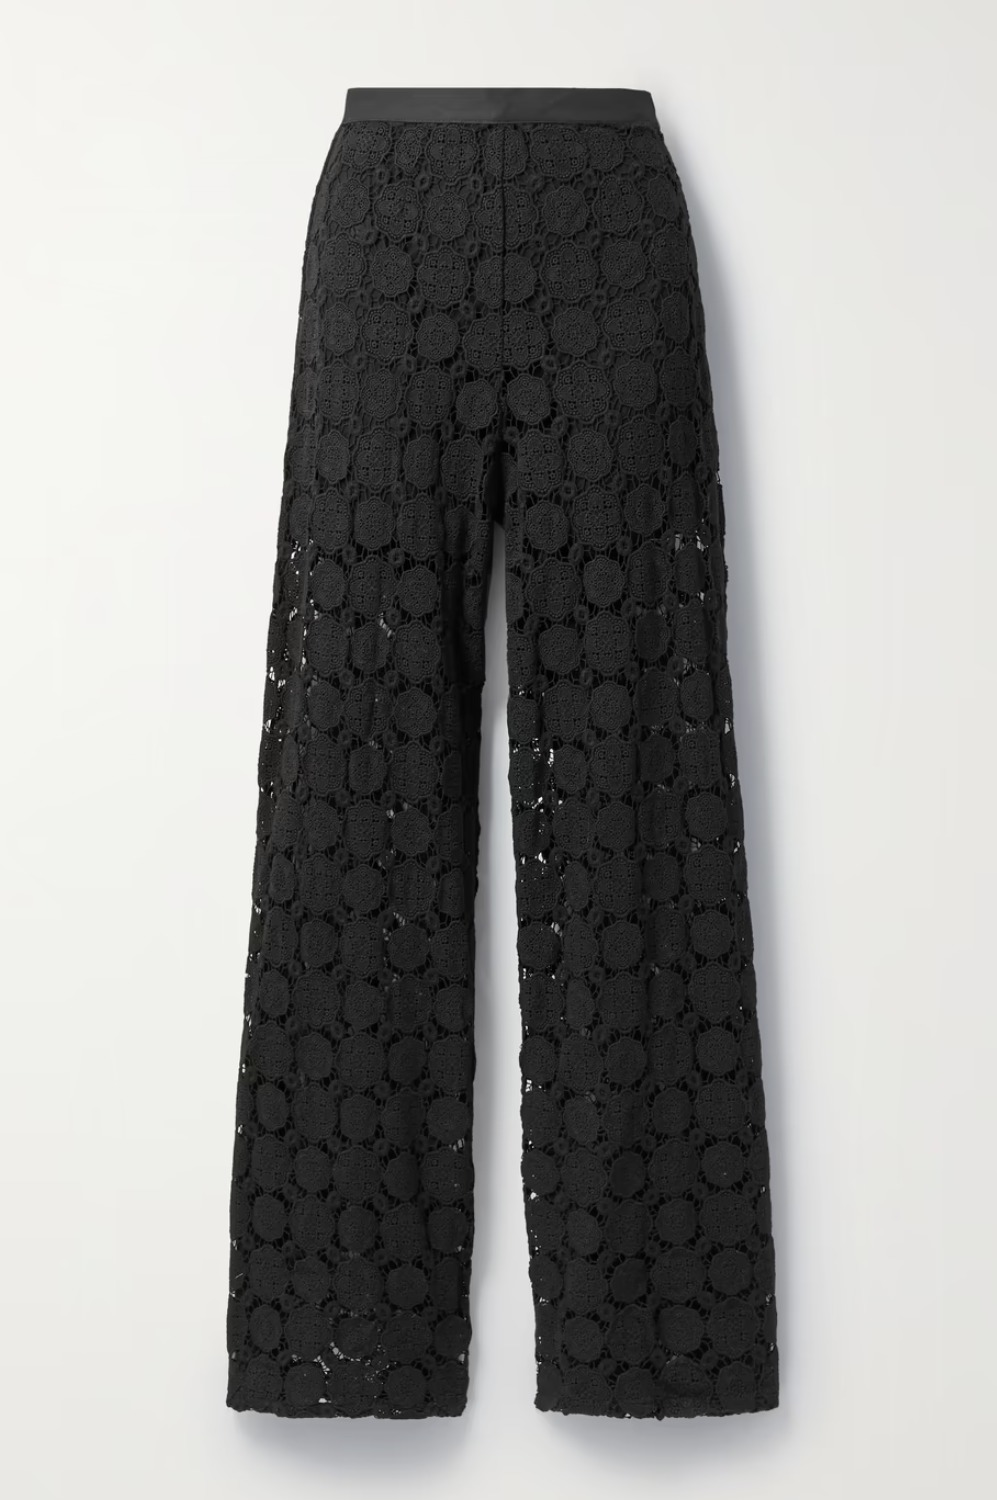 Где купить черные полупрозрачные брюки как у Барбары Палвин?